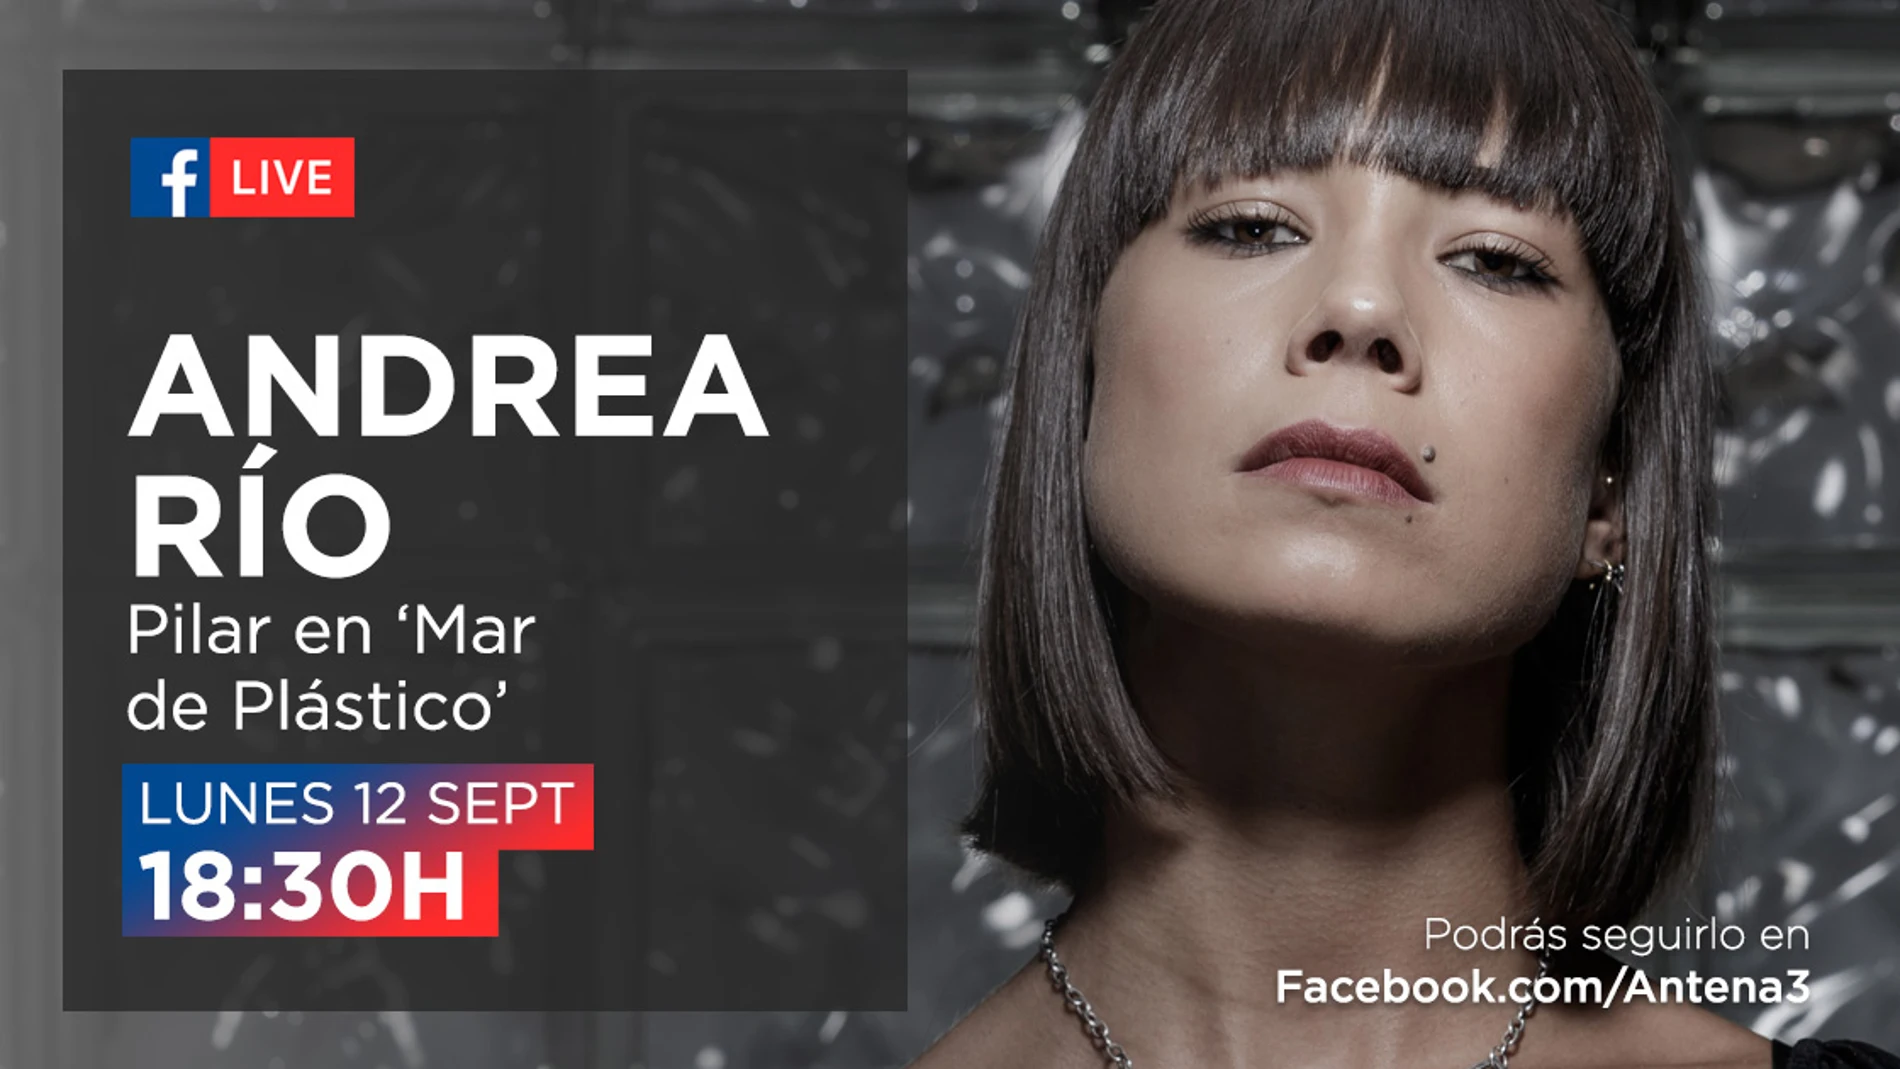 El lunes, Andrea del Río estará en directo en el Facebook de Antena 3 para responder a las preguntas de los fans